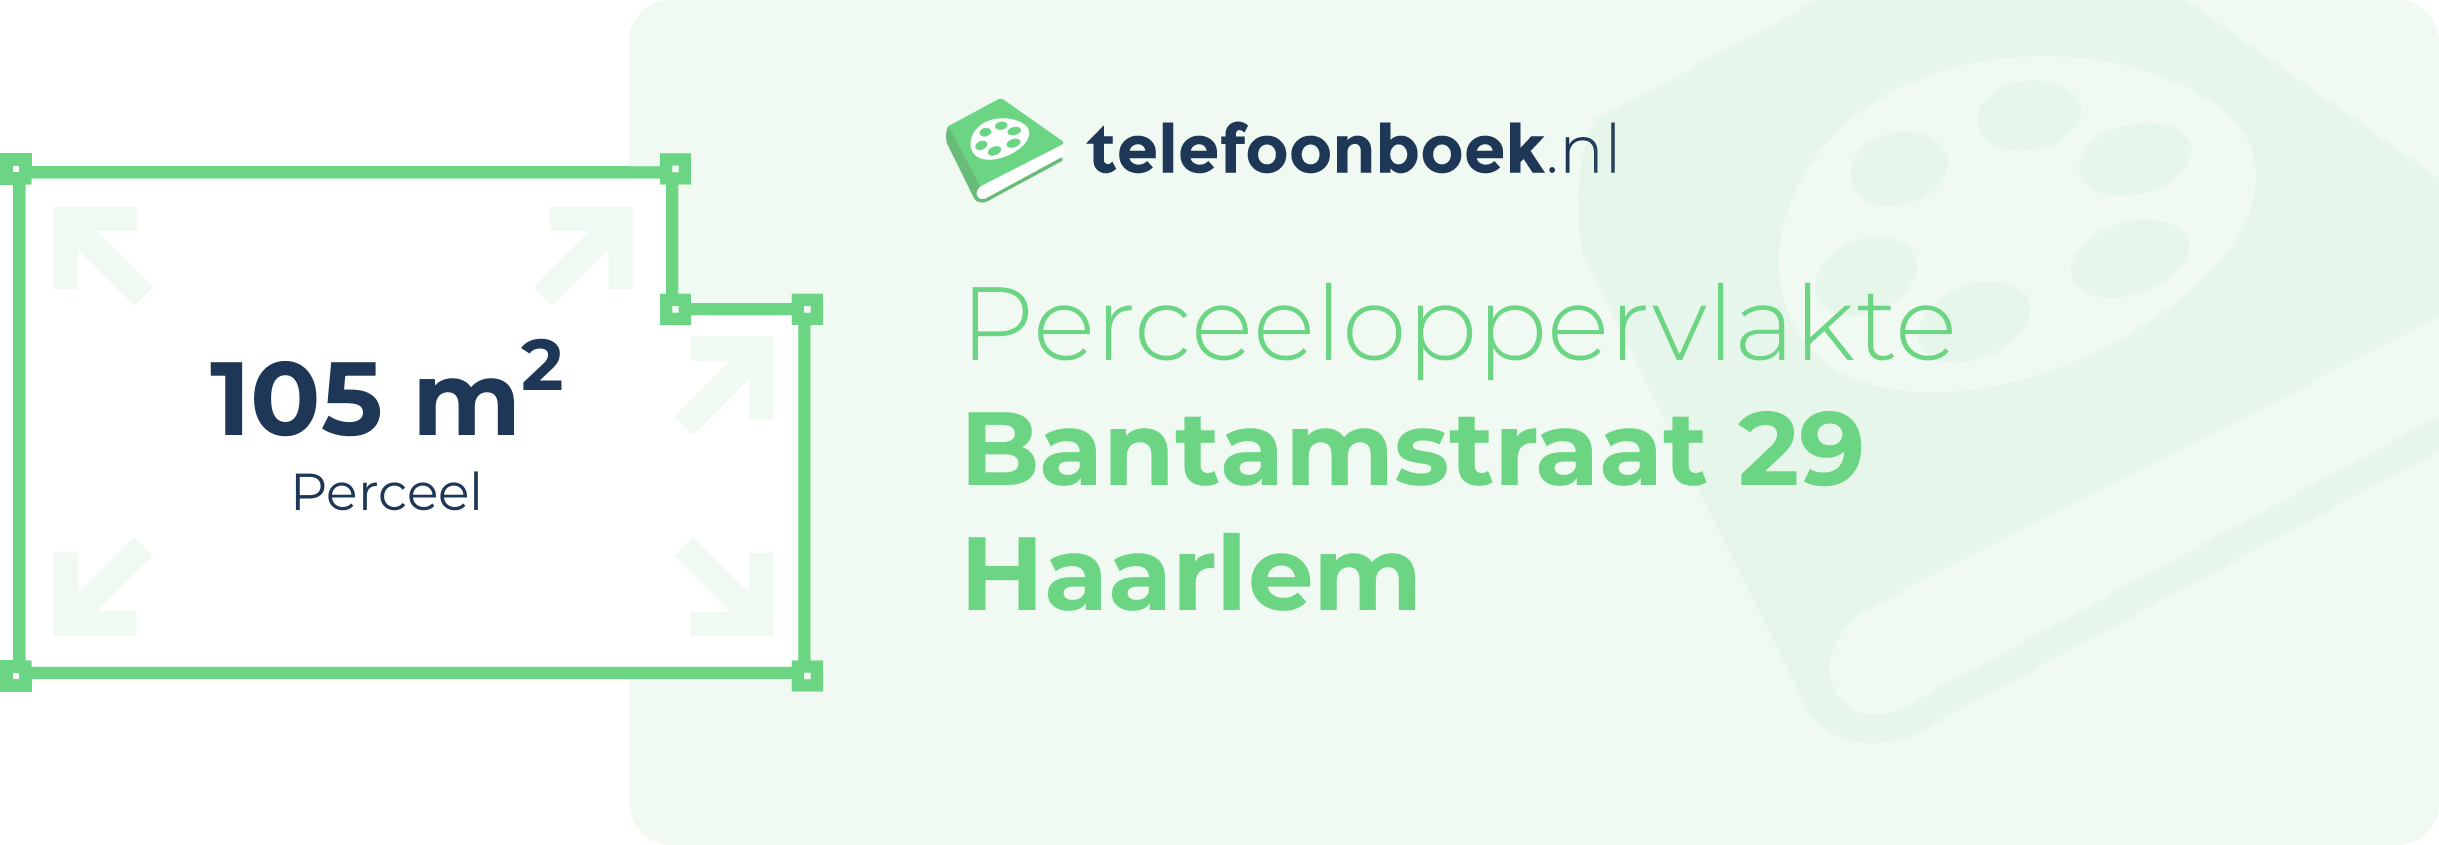 Perceeloppervlakte Bantamstraat 29 Haarlem